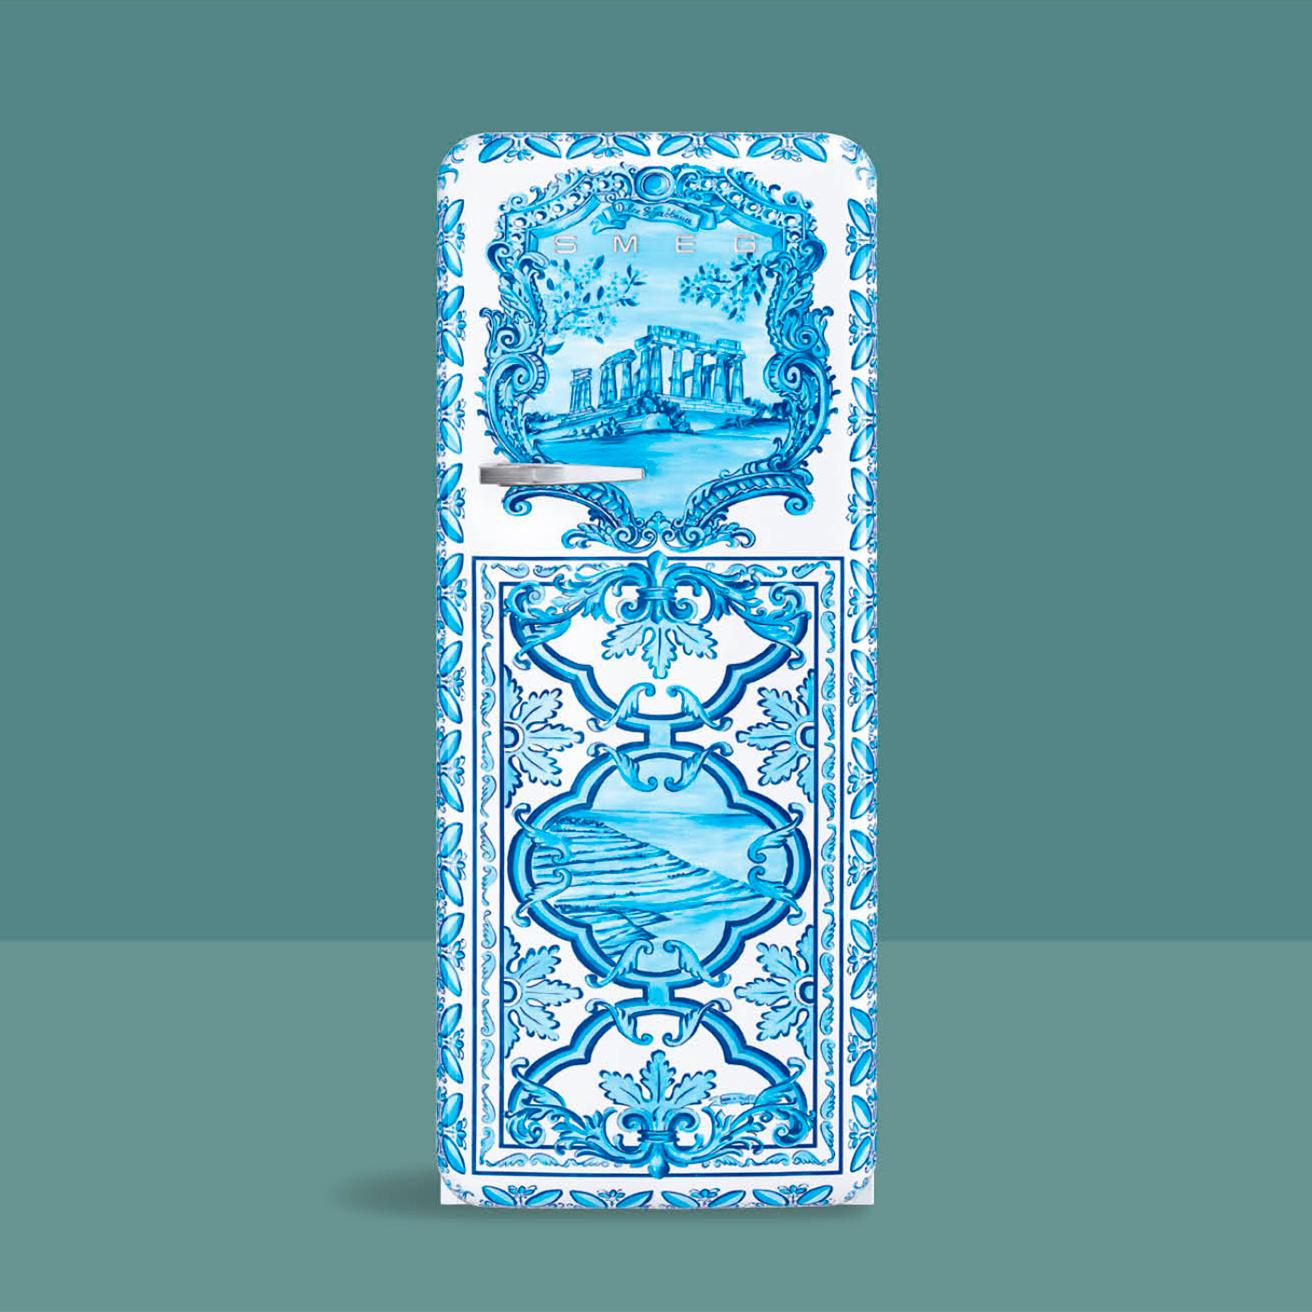 マヨルカ焼をイメージしましたモティーフが青と白であしらってございます。冷蔵庫《Maiolica》2,200,000円。